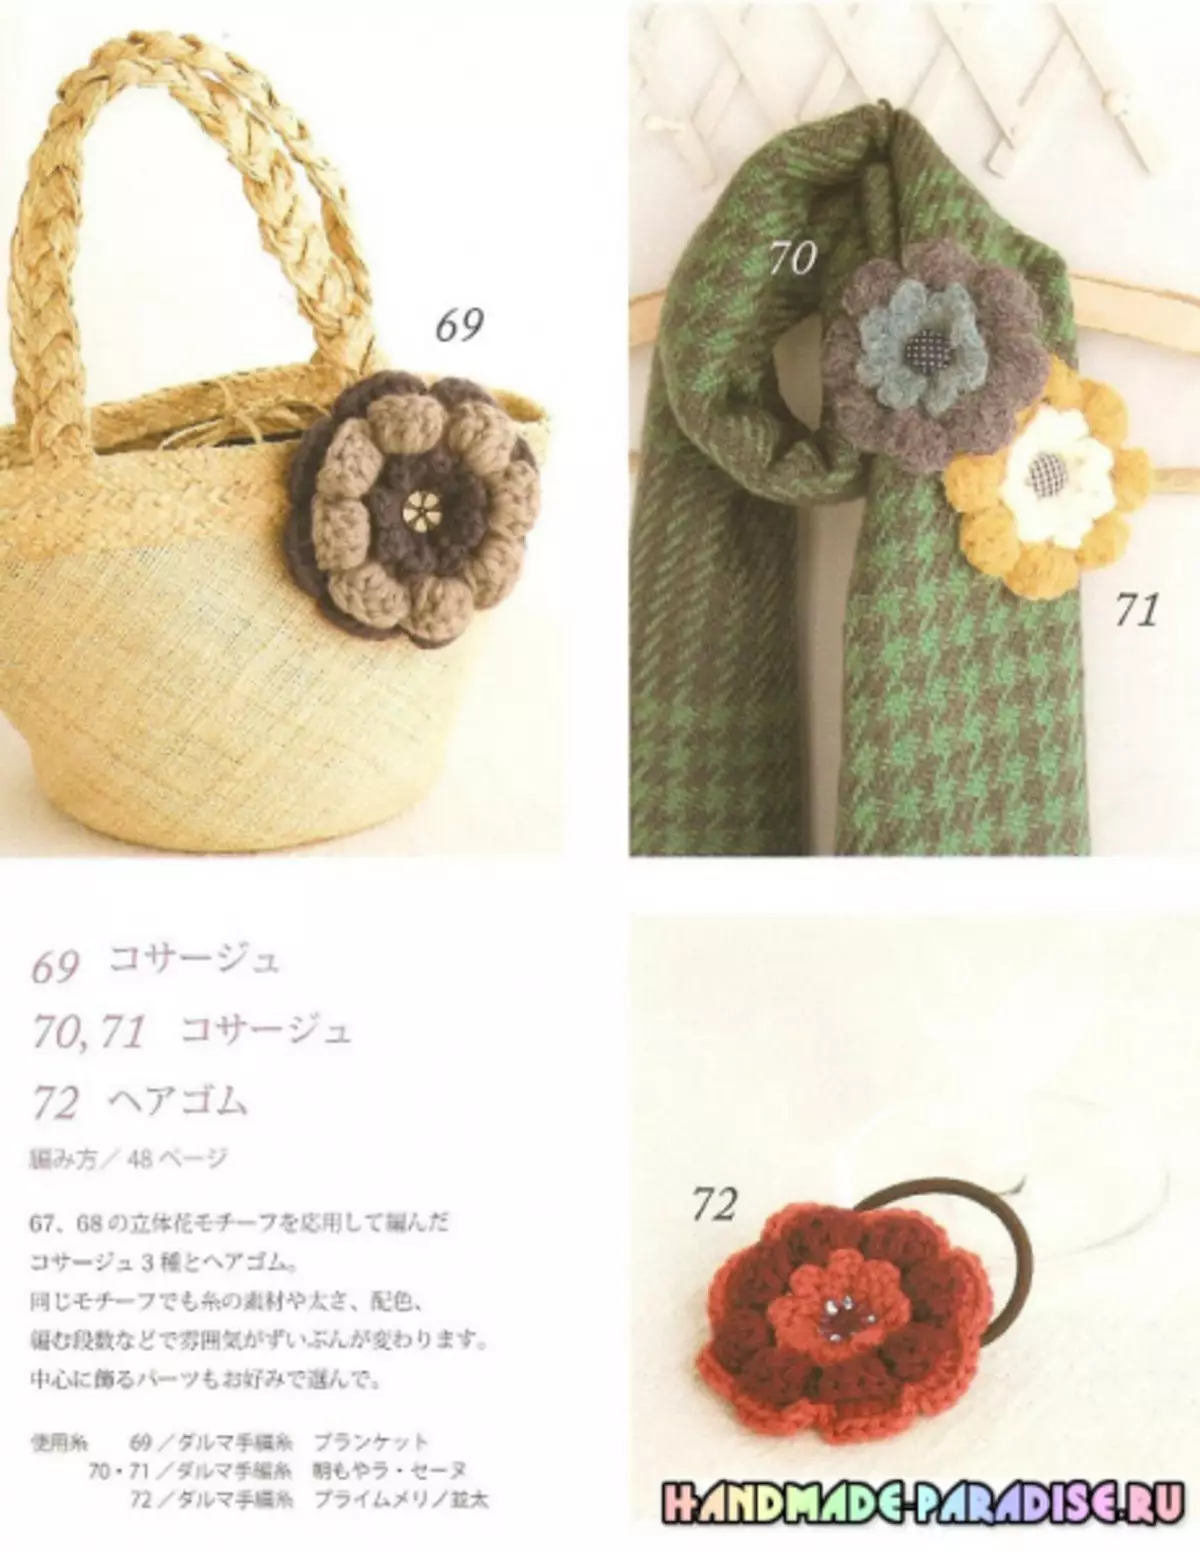 Revista japonesa con esquemas de ganchillo.